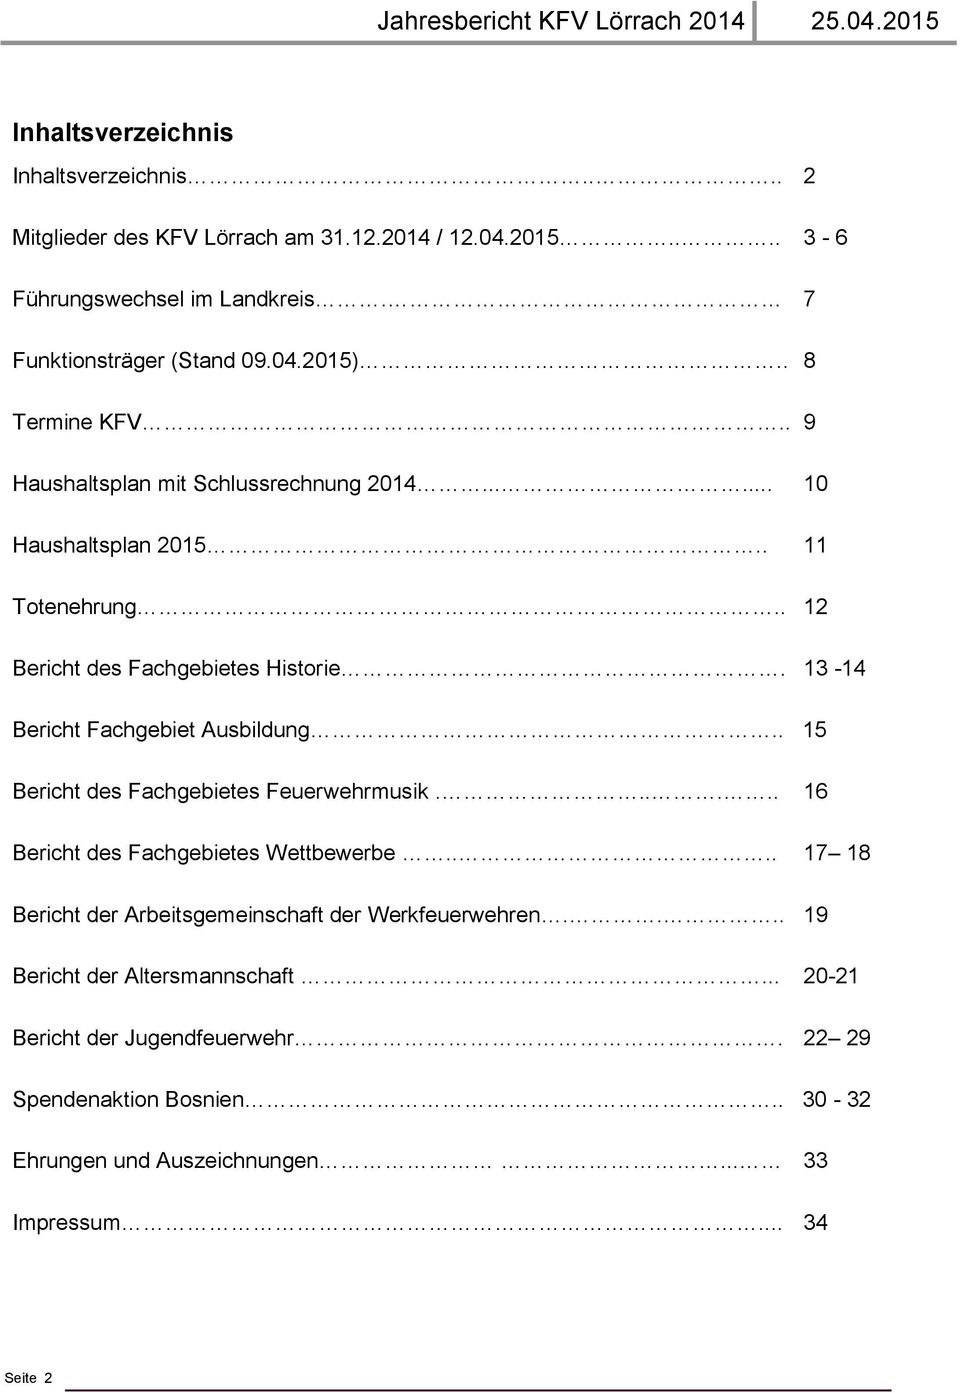 13-14 Bericht Fachgebiet Ausbildung.. 15 Bericht des Fachgebietes Feuerwehrmusik...... 16 Bericht des Fachgebietes Wettbewerbe.